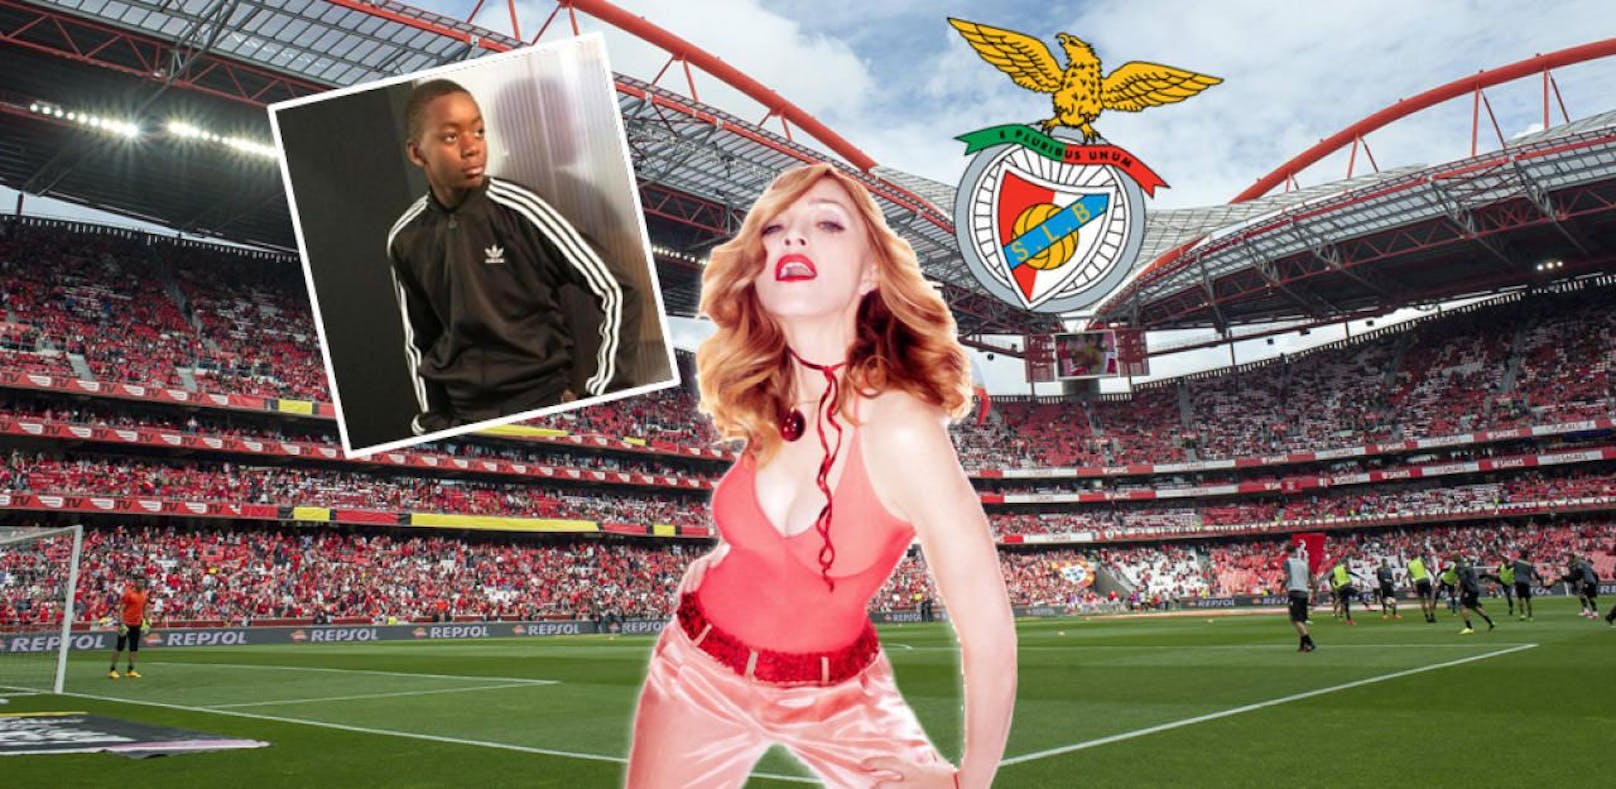 Sohn bei Benfica: Madonna zieht nach Lissabon